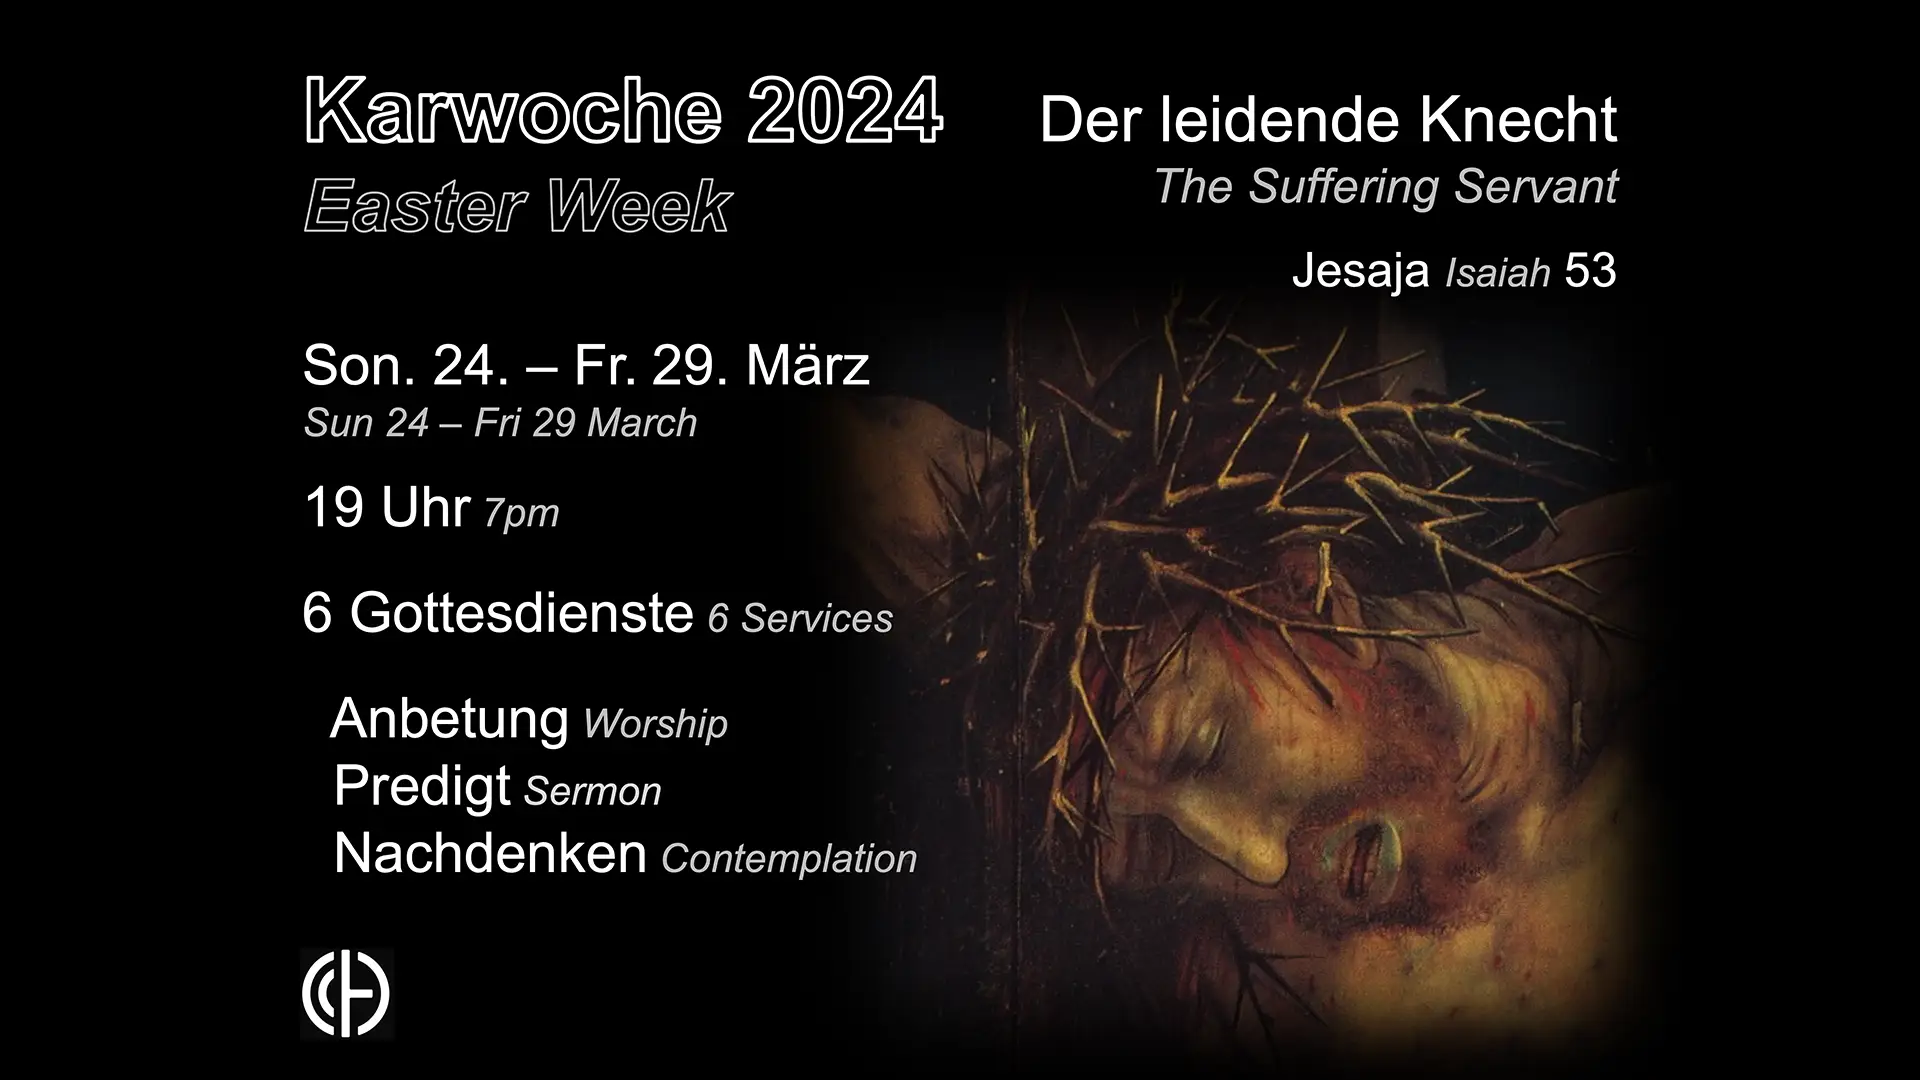 Karwoche 2024 in der Calvary Chapel Heidelberg zum Thema "der leidende Knecht"